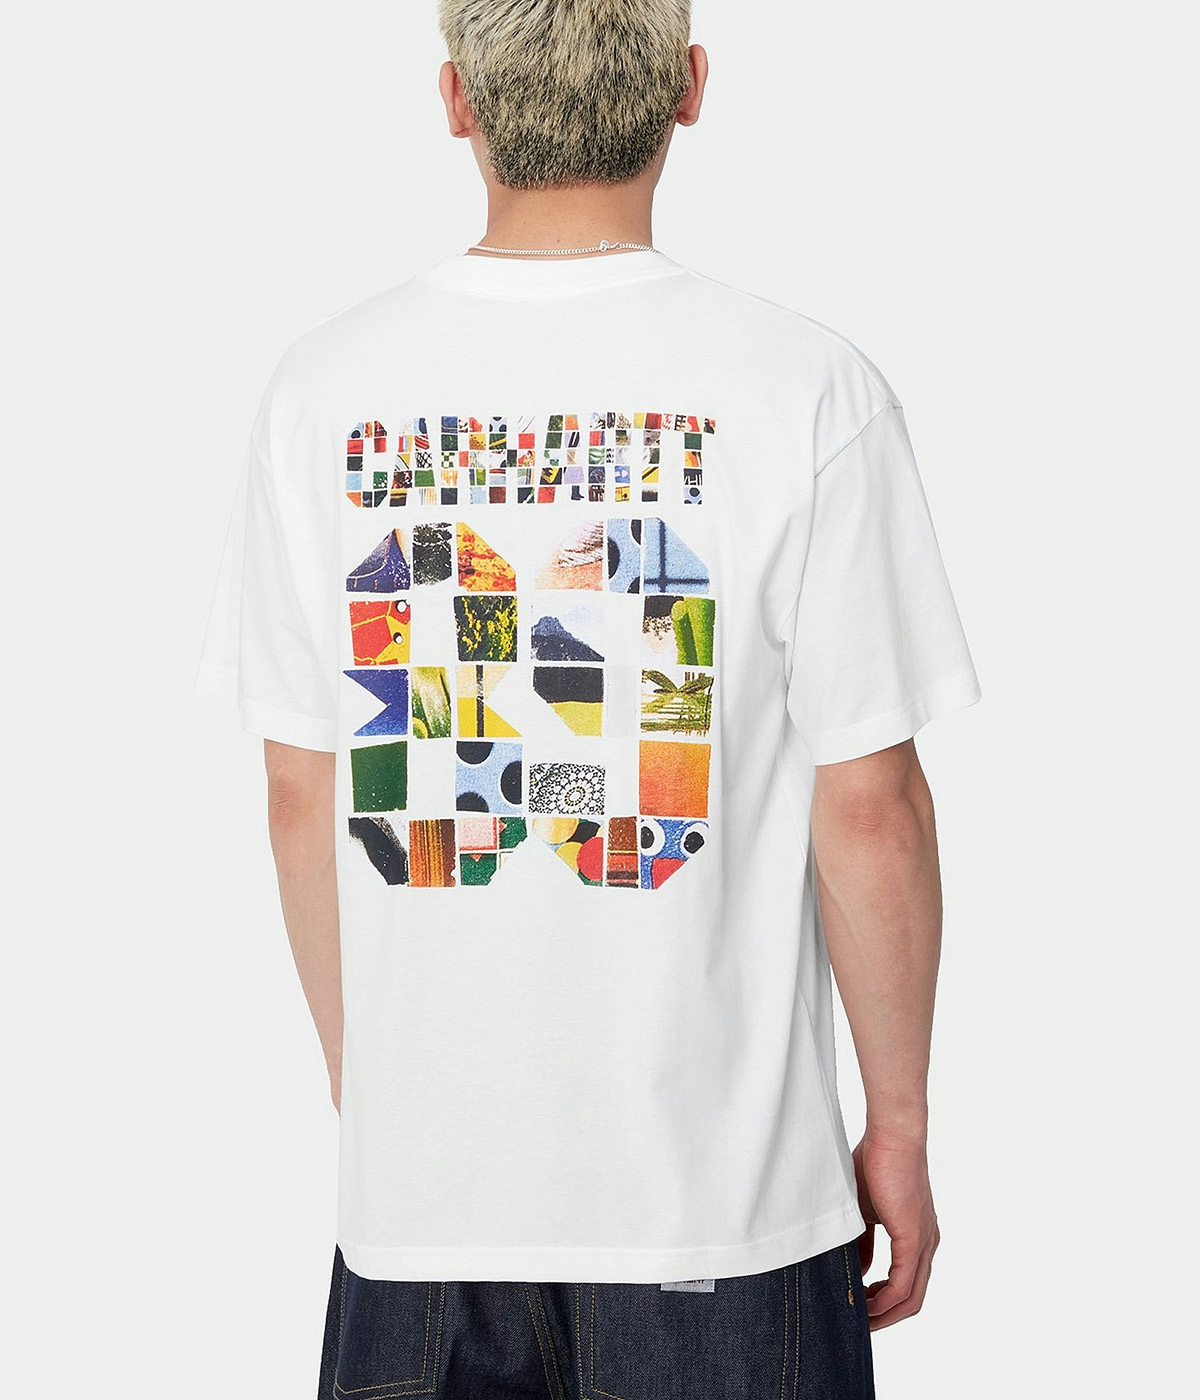 Carhartt T-shirt S/S Machine 89 White